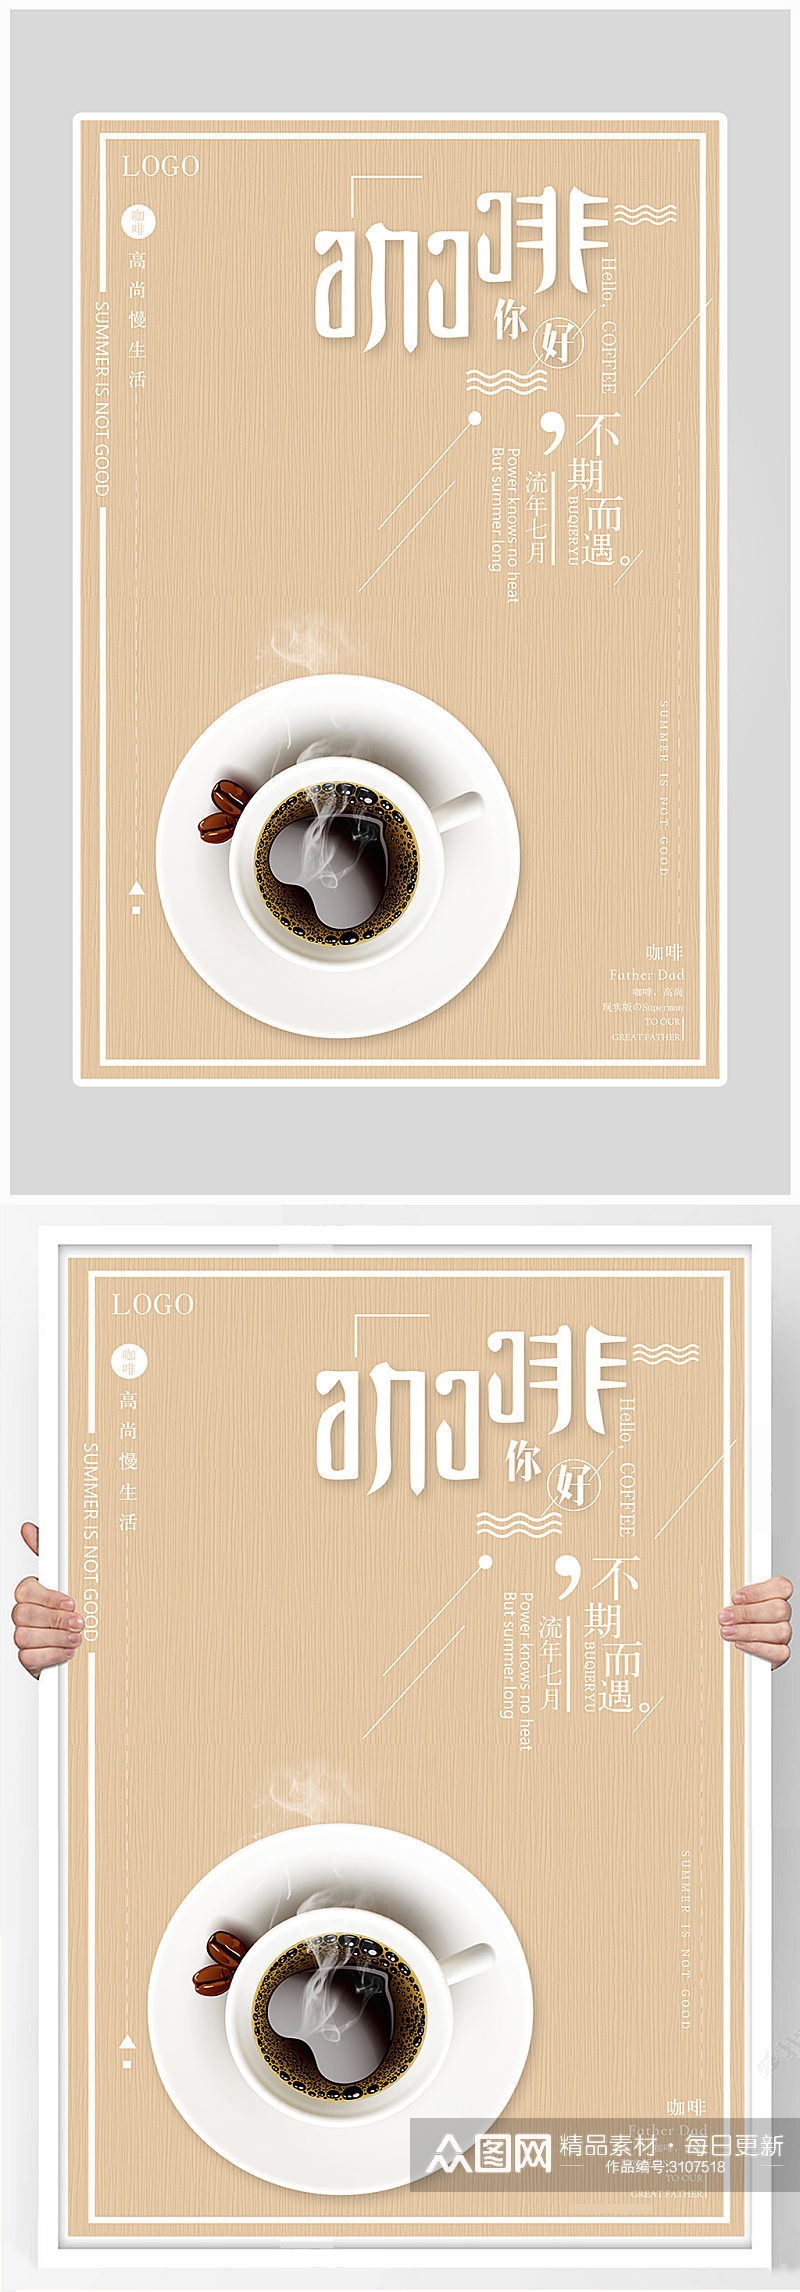 创意简约唯美咖啡休闲海报设计素材